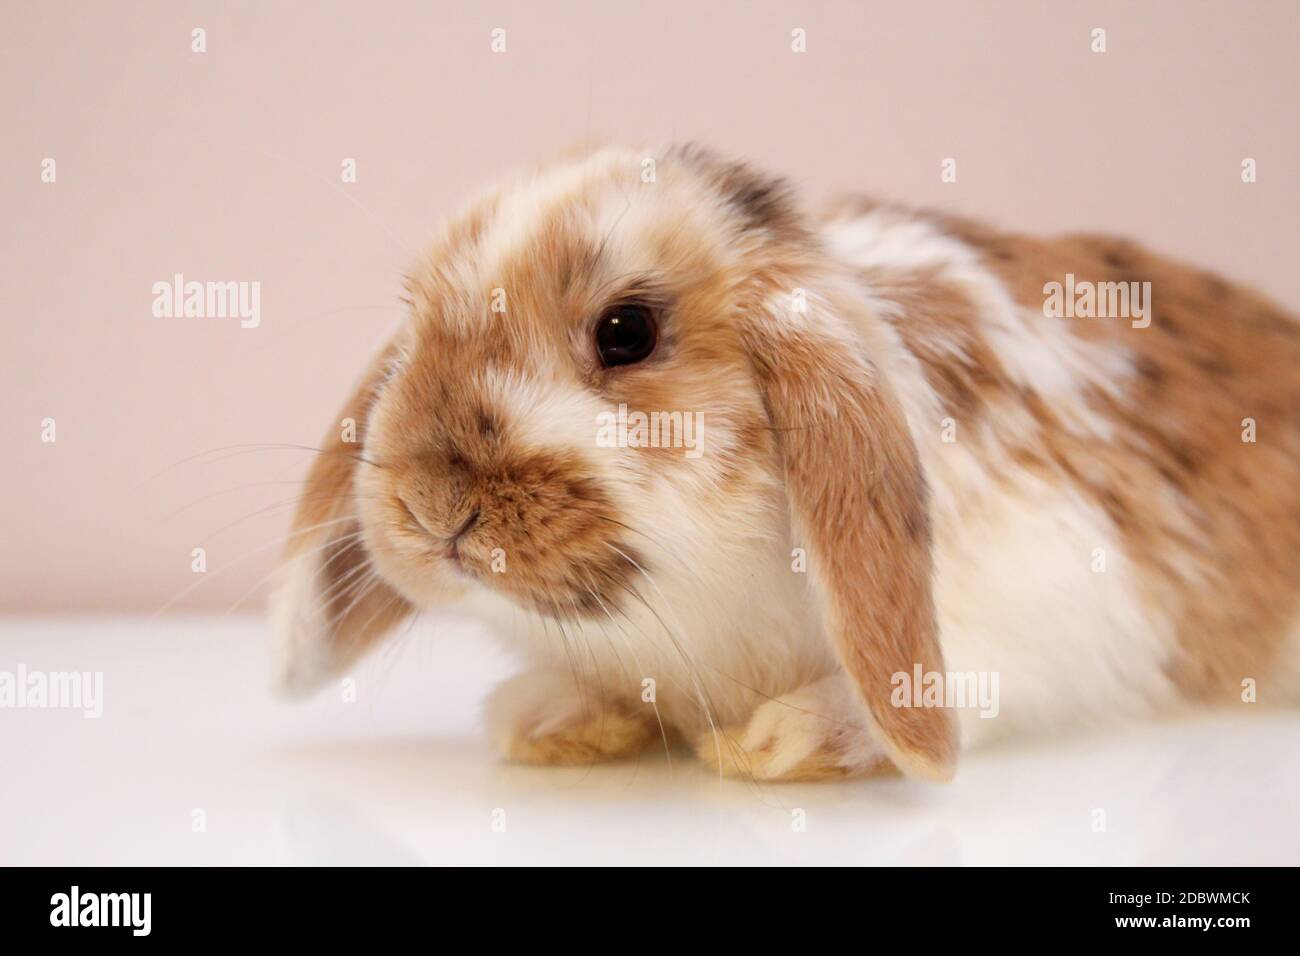 Fotografía con un conejo enano joven Foto de stock